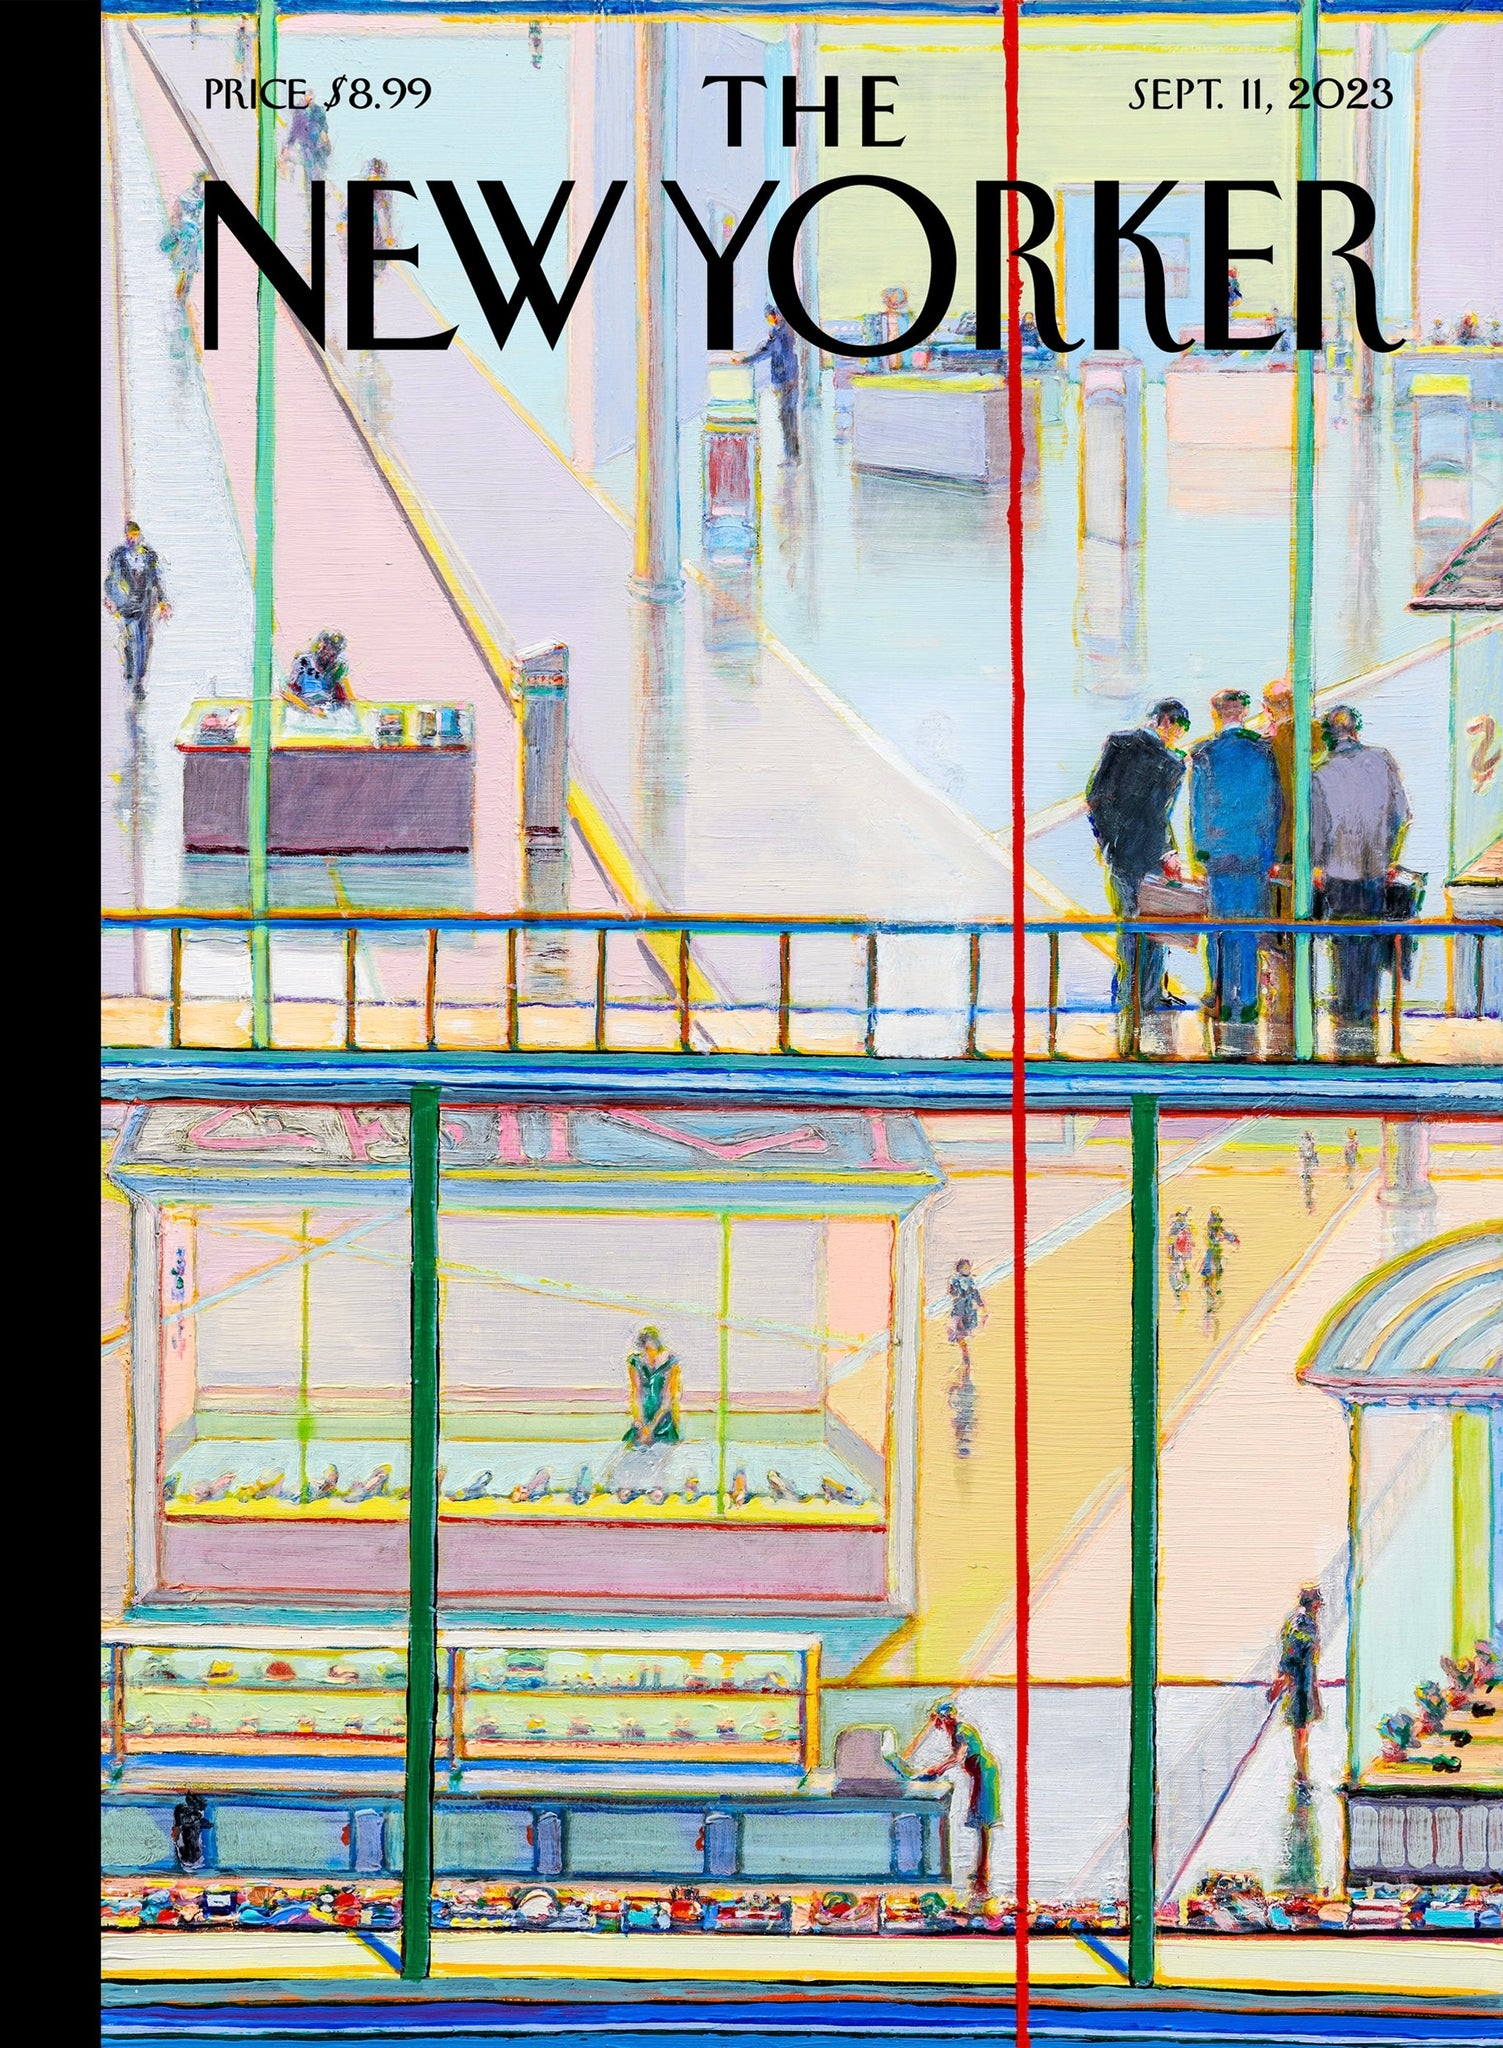 The New Yorker, September 11, 2023